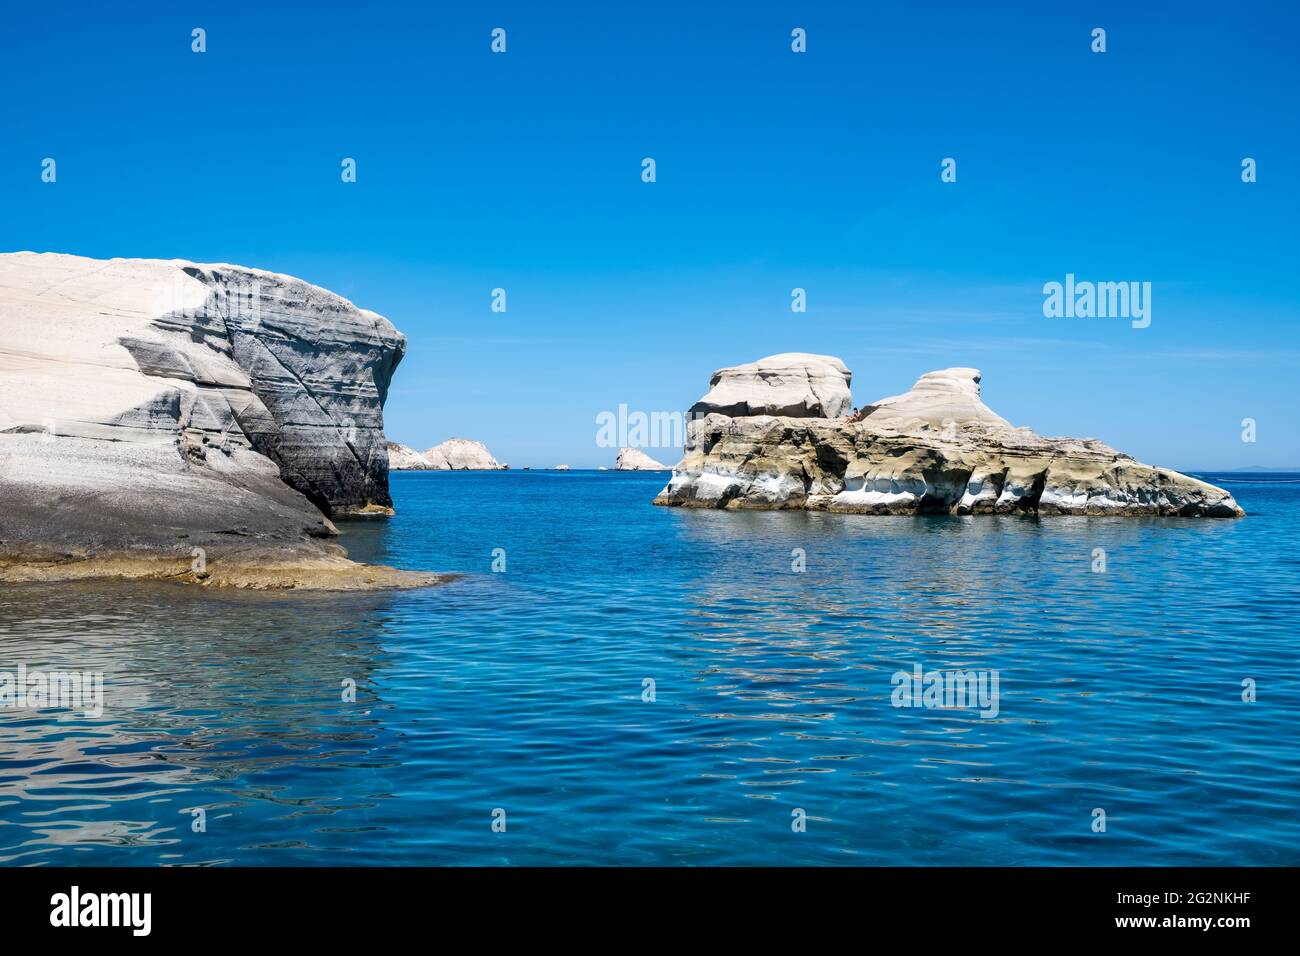 Insel Milos, Sarakiniko. Kykladen Griechenland. Mondlandschaft. Weiße Felsformationen, Klippen und Höhlen, blaues, gewelltes Meer und klarer Himmel im Hintergrund. Stockfoto